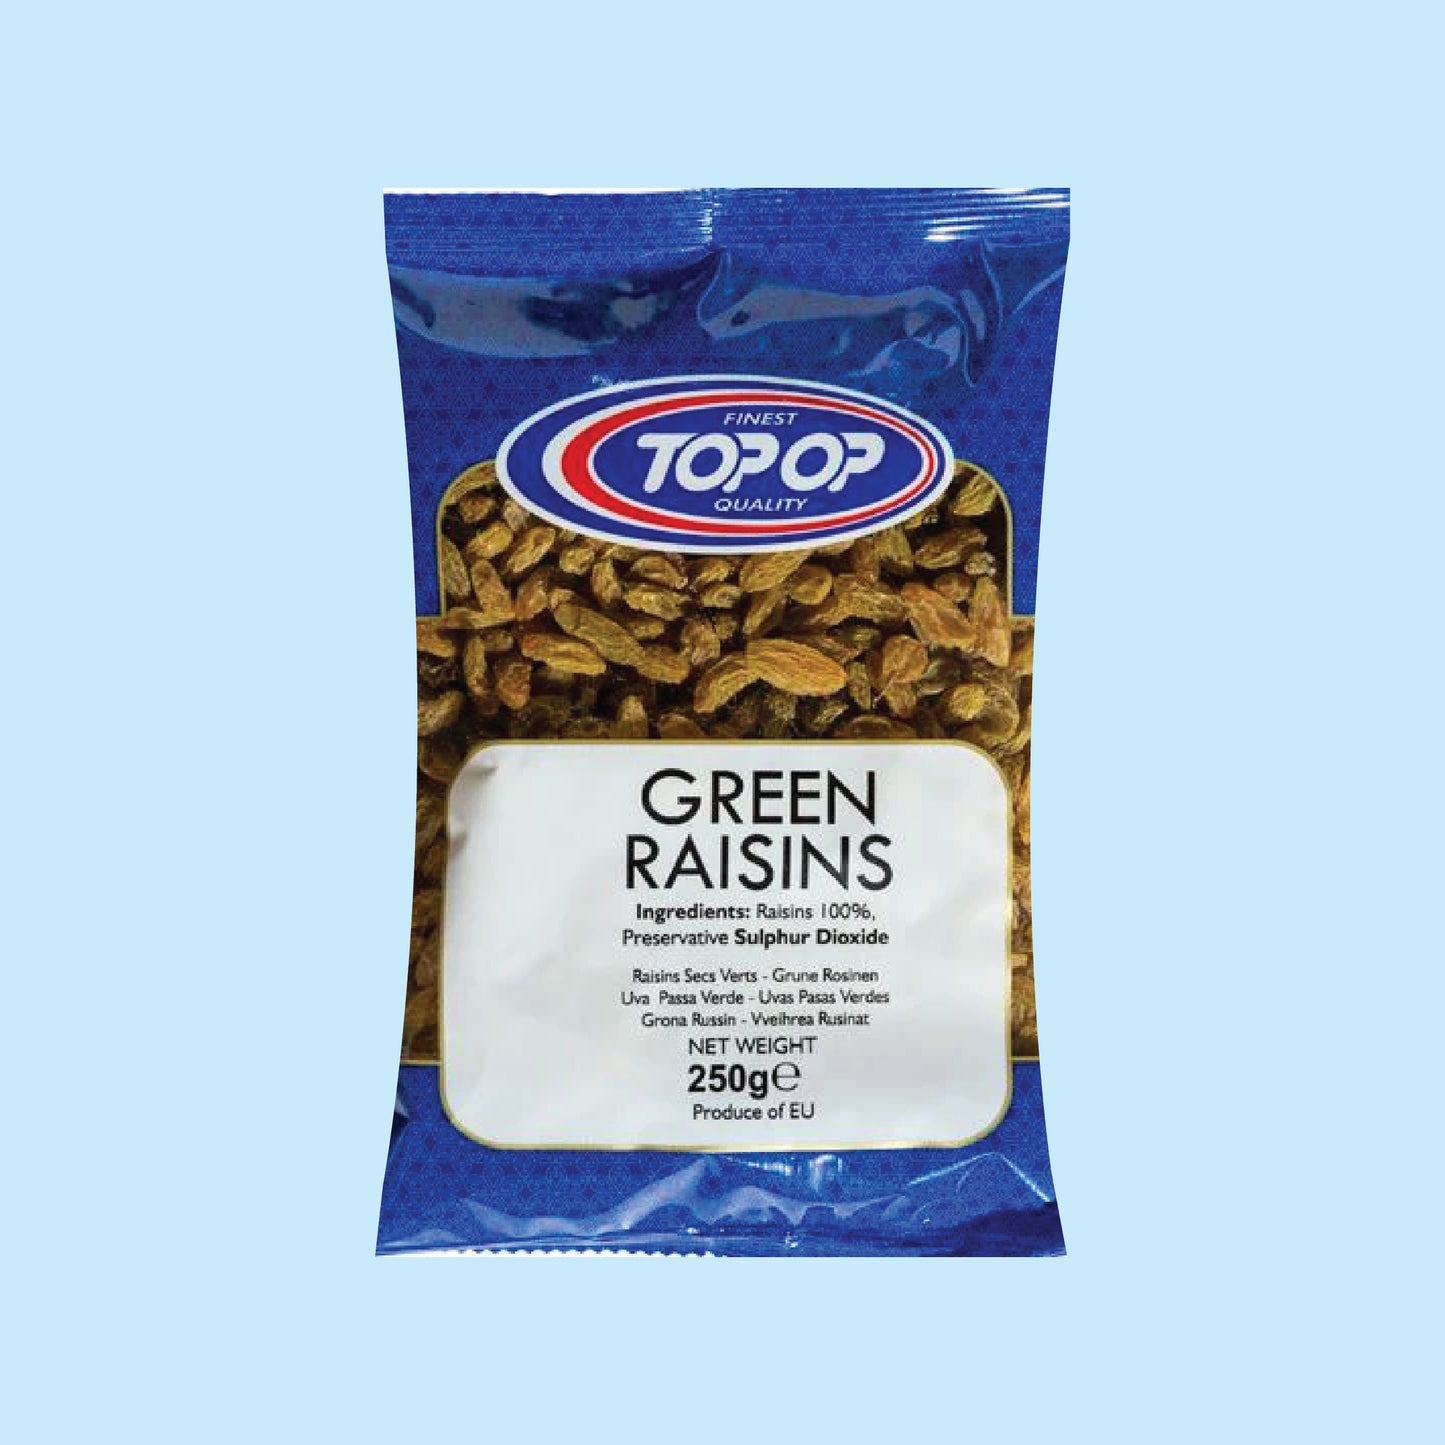 Top-Op Green Raisins